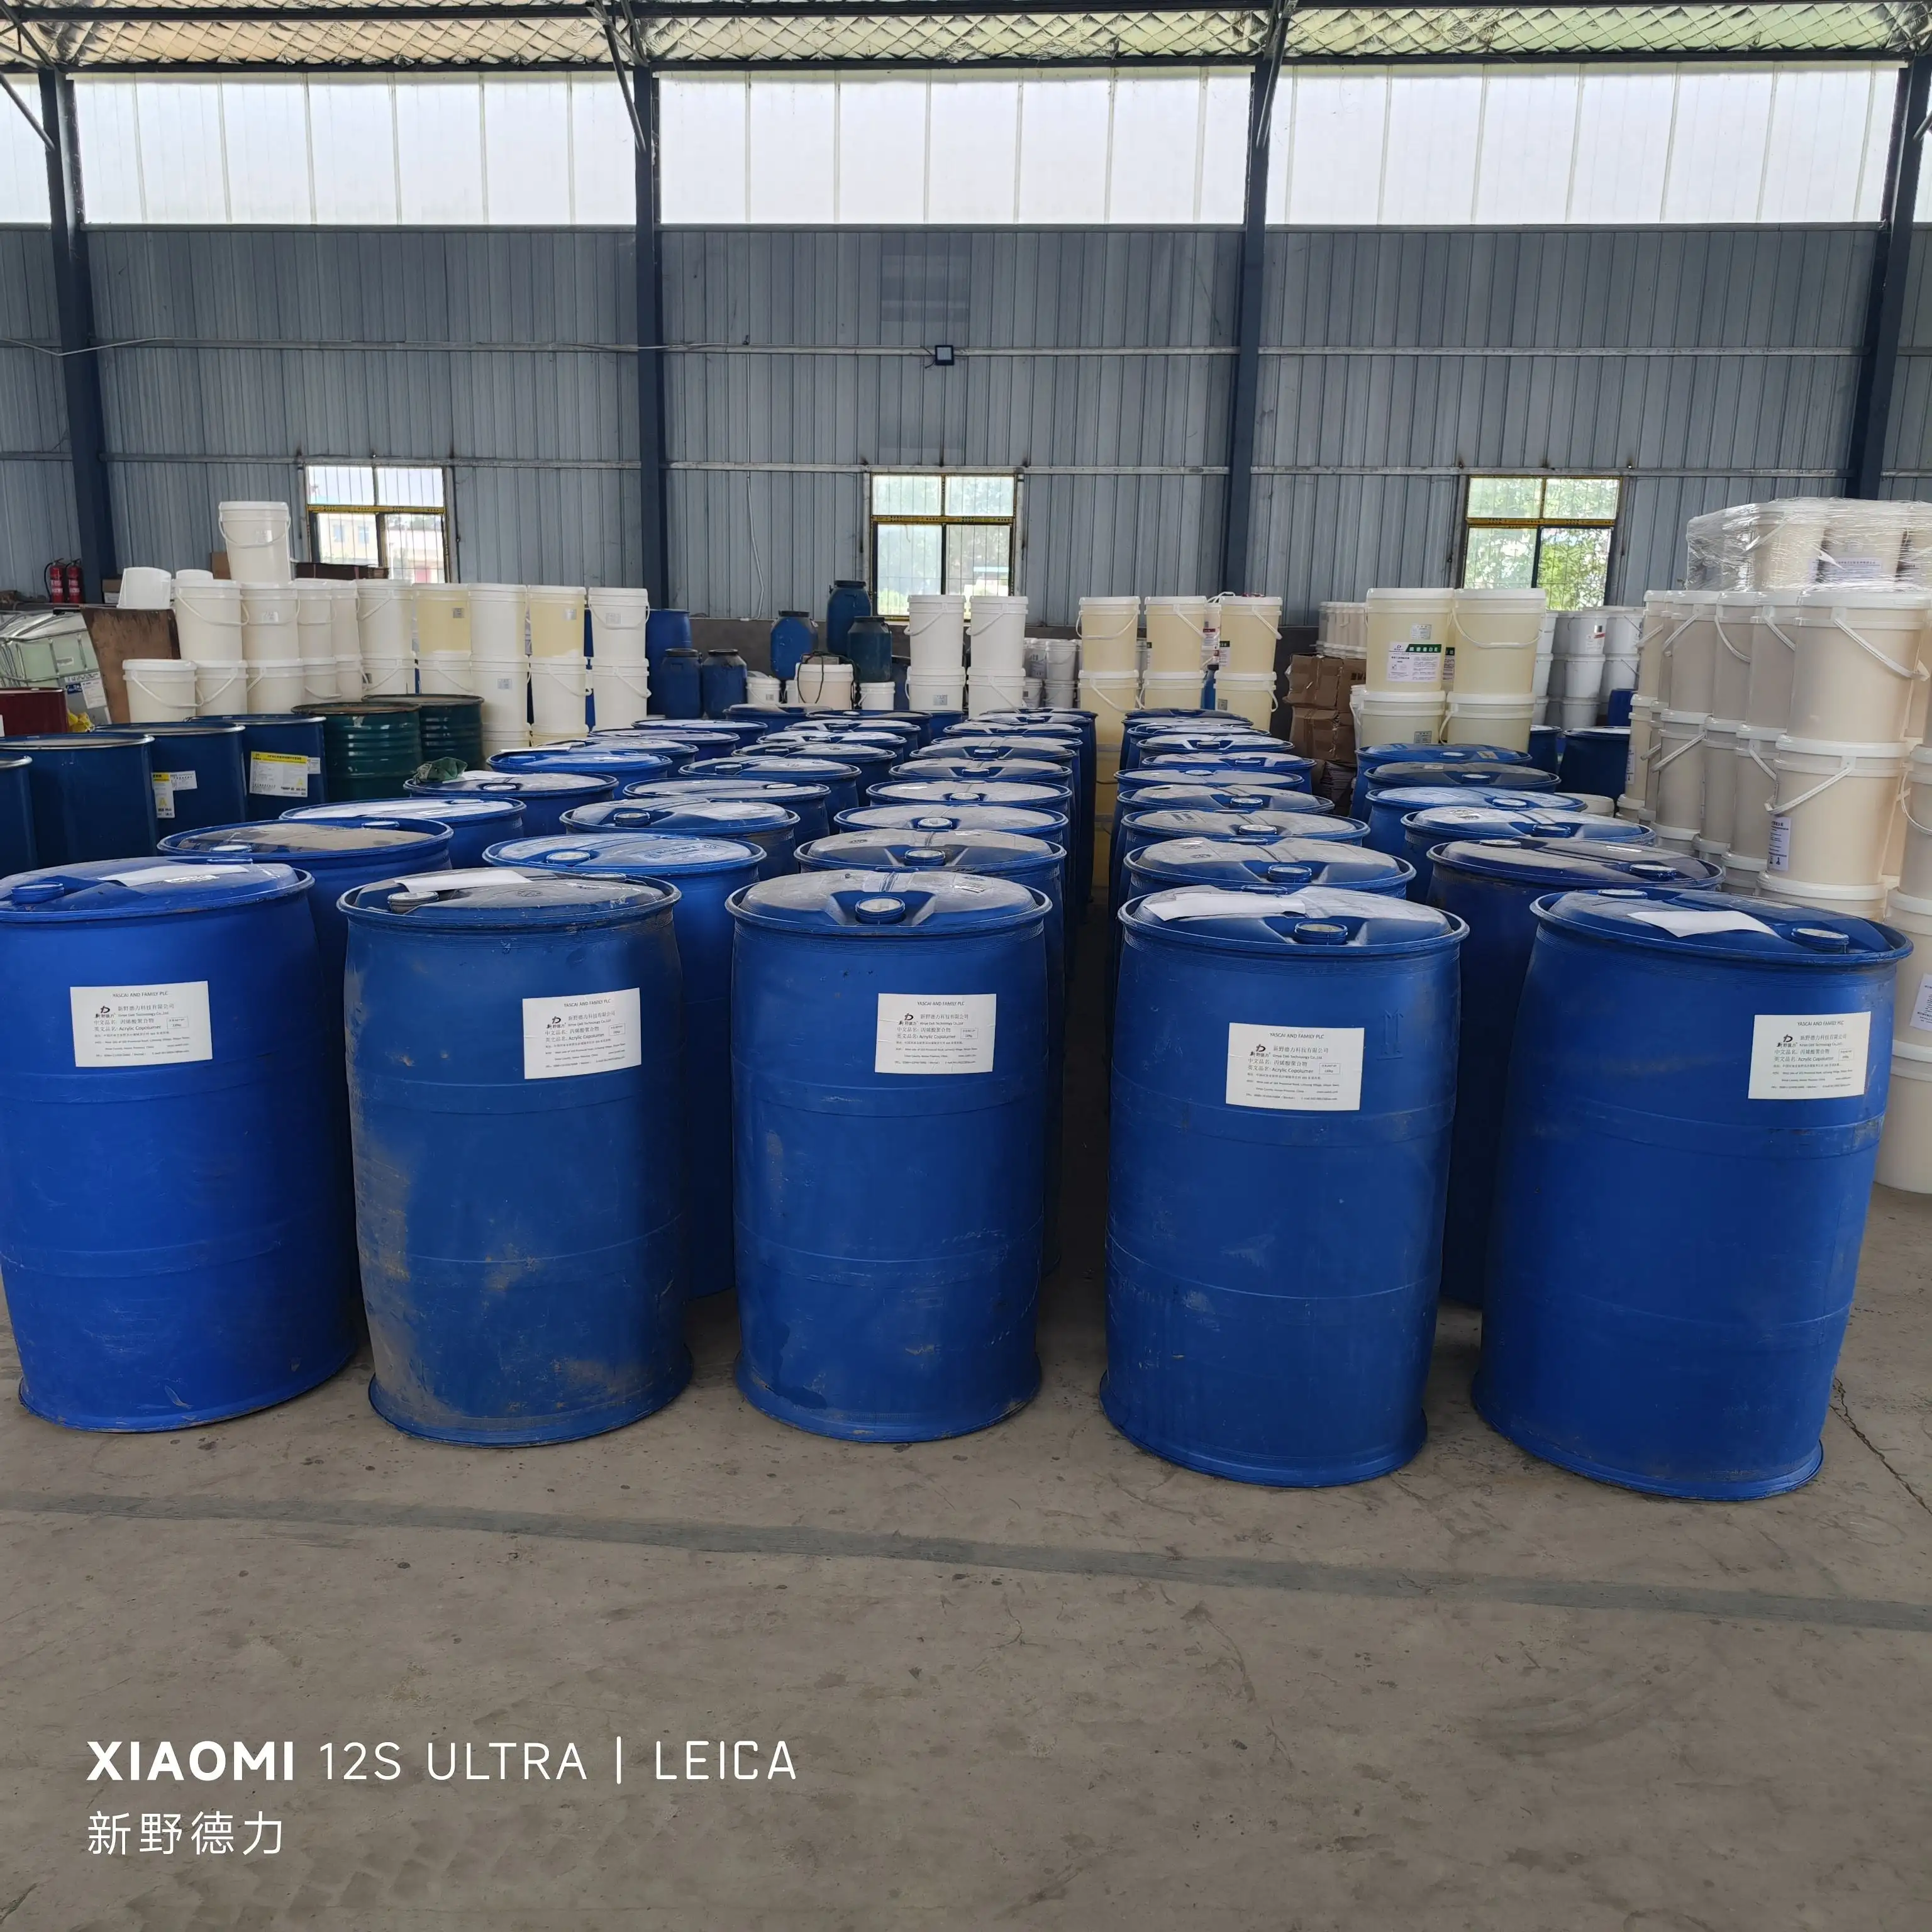 Acryl-Emulsion, hergestellt aus der chinesischen Quellfabrik, exklusive technische Formulierung, wird zur Herstellung von Anti-Eis-Wasserbindern verwendet